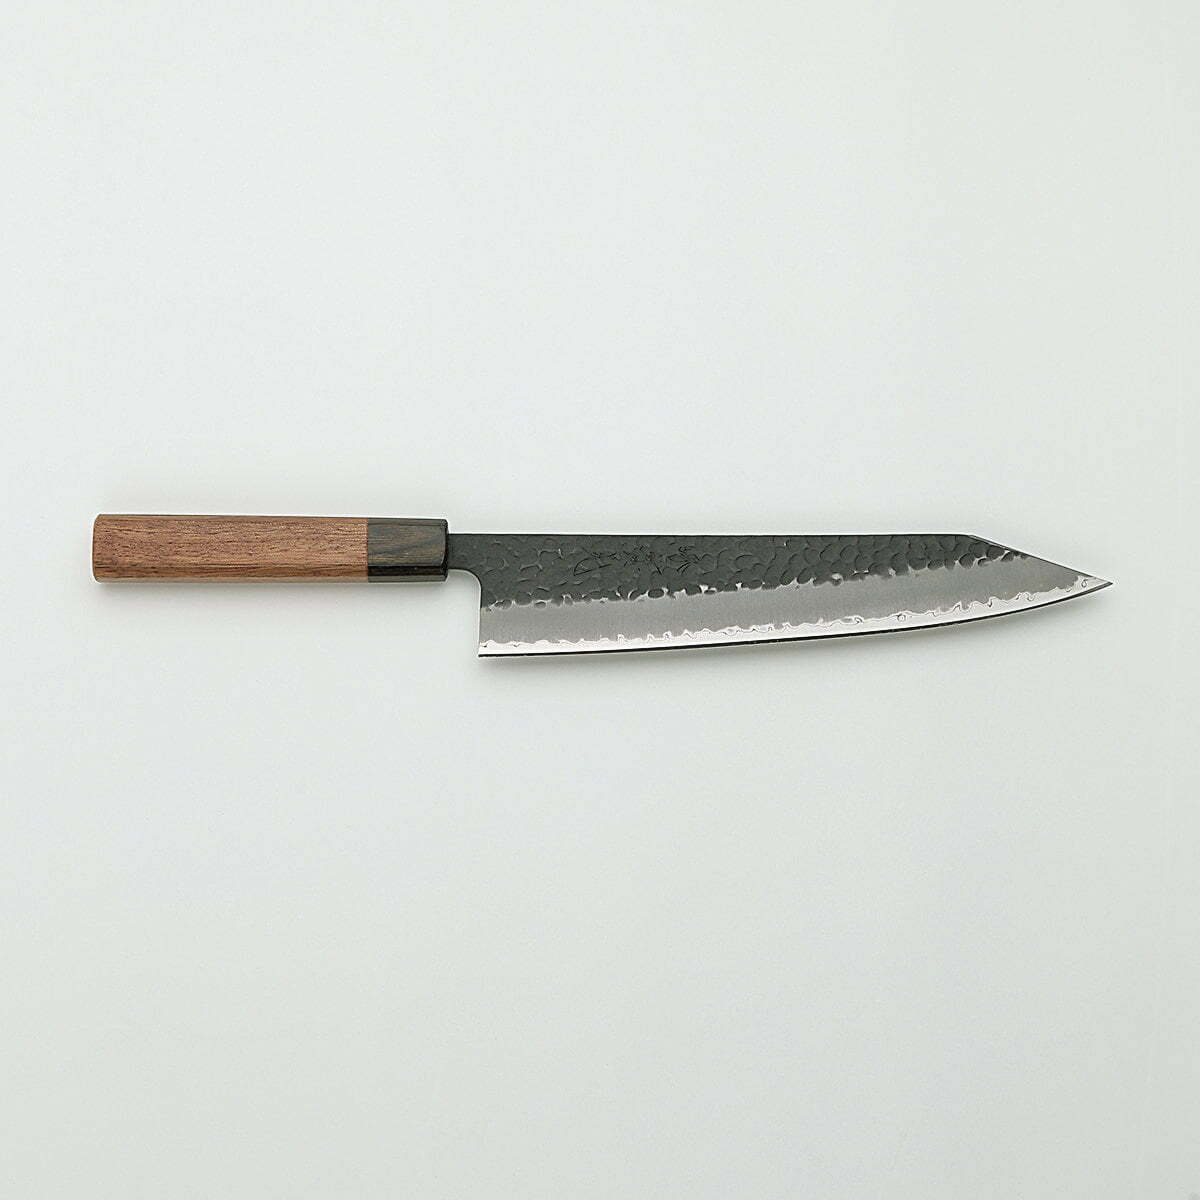 סכין שף רב-תכליתית קִּירִיצוּקֶה גִּיוּטוֹ 230מ״מ מחוזקת 3 שכבות: פלדת פחמן יפנית מתקדמת מסוג Aogami Super עטופה פלדת אל-חלד גימור קורואיצ׳י שחור עם ריקוע פטיש ג׳יקו סאקאיי יפן